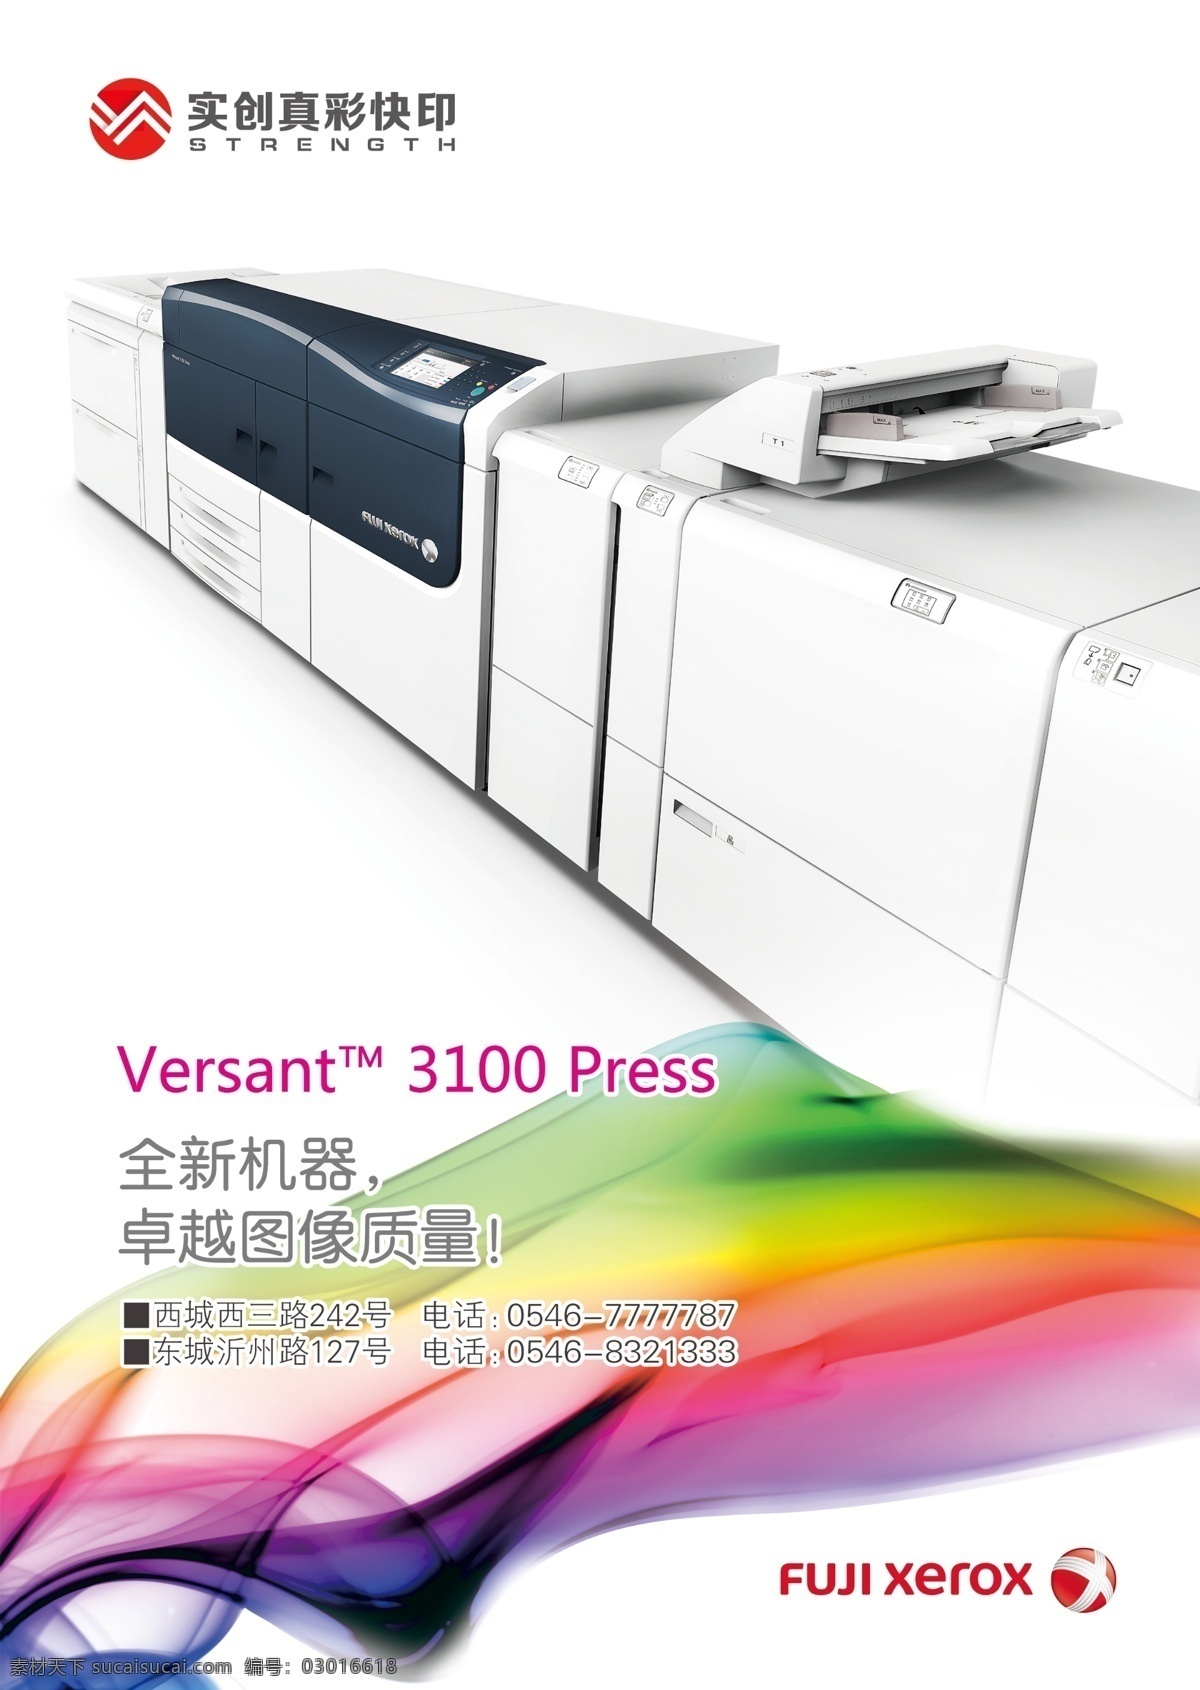 打印机 海报 机器 打印机器 施乐3100 招贴设计